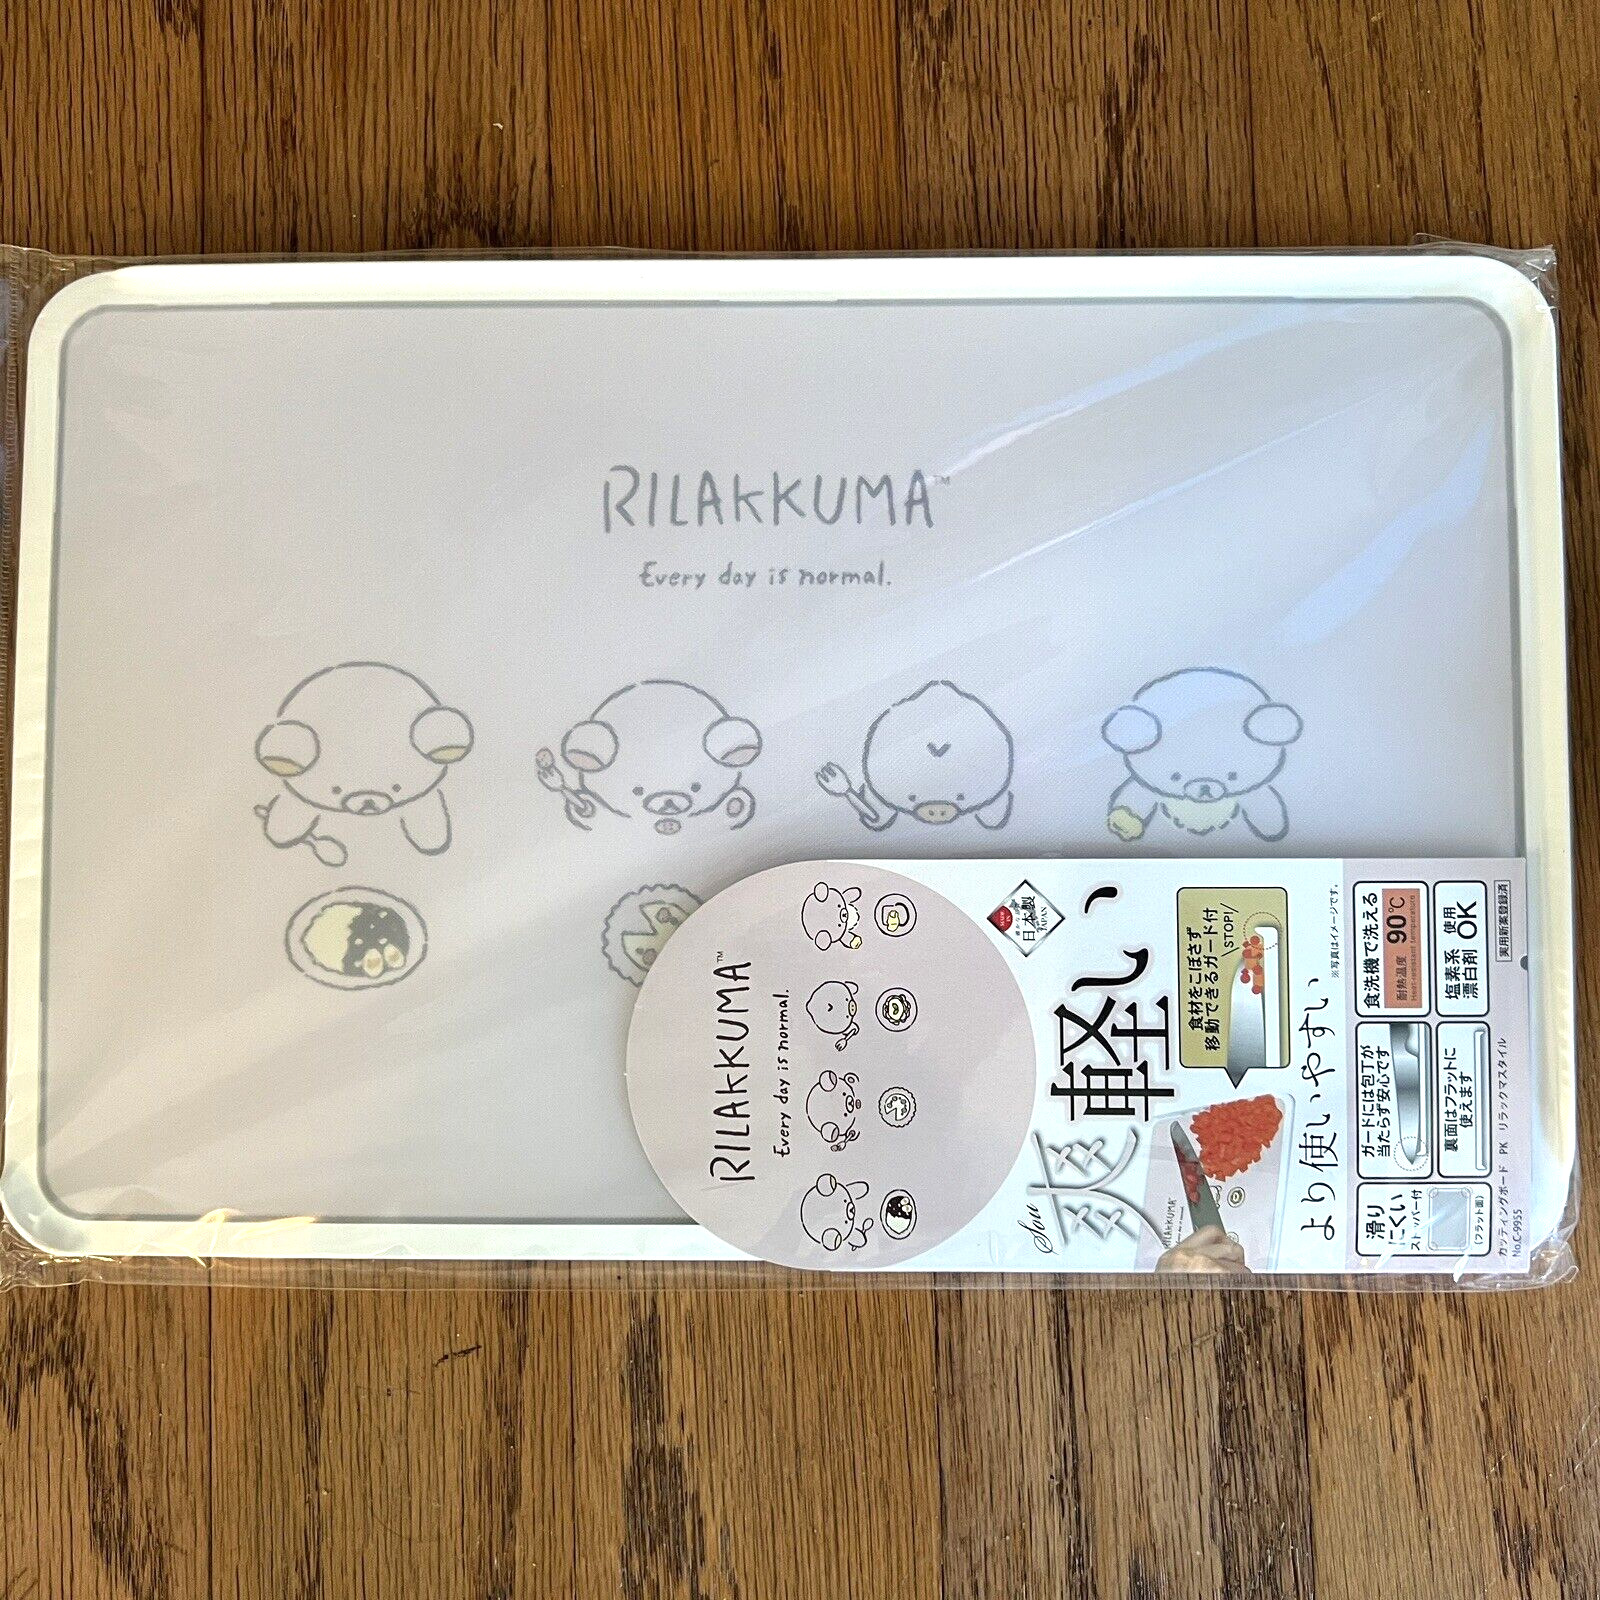 San-X Japan Rilakkuma Cutting Board 2 Sided 13x8 Dishwasher Safe NEW